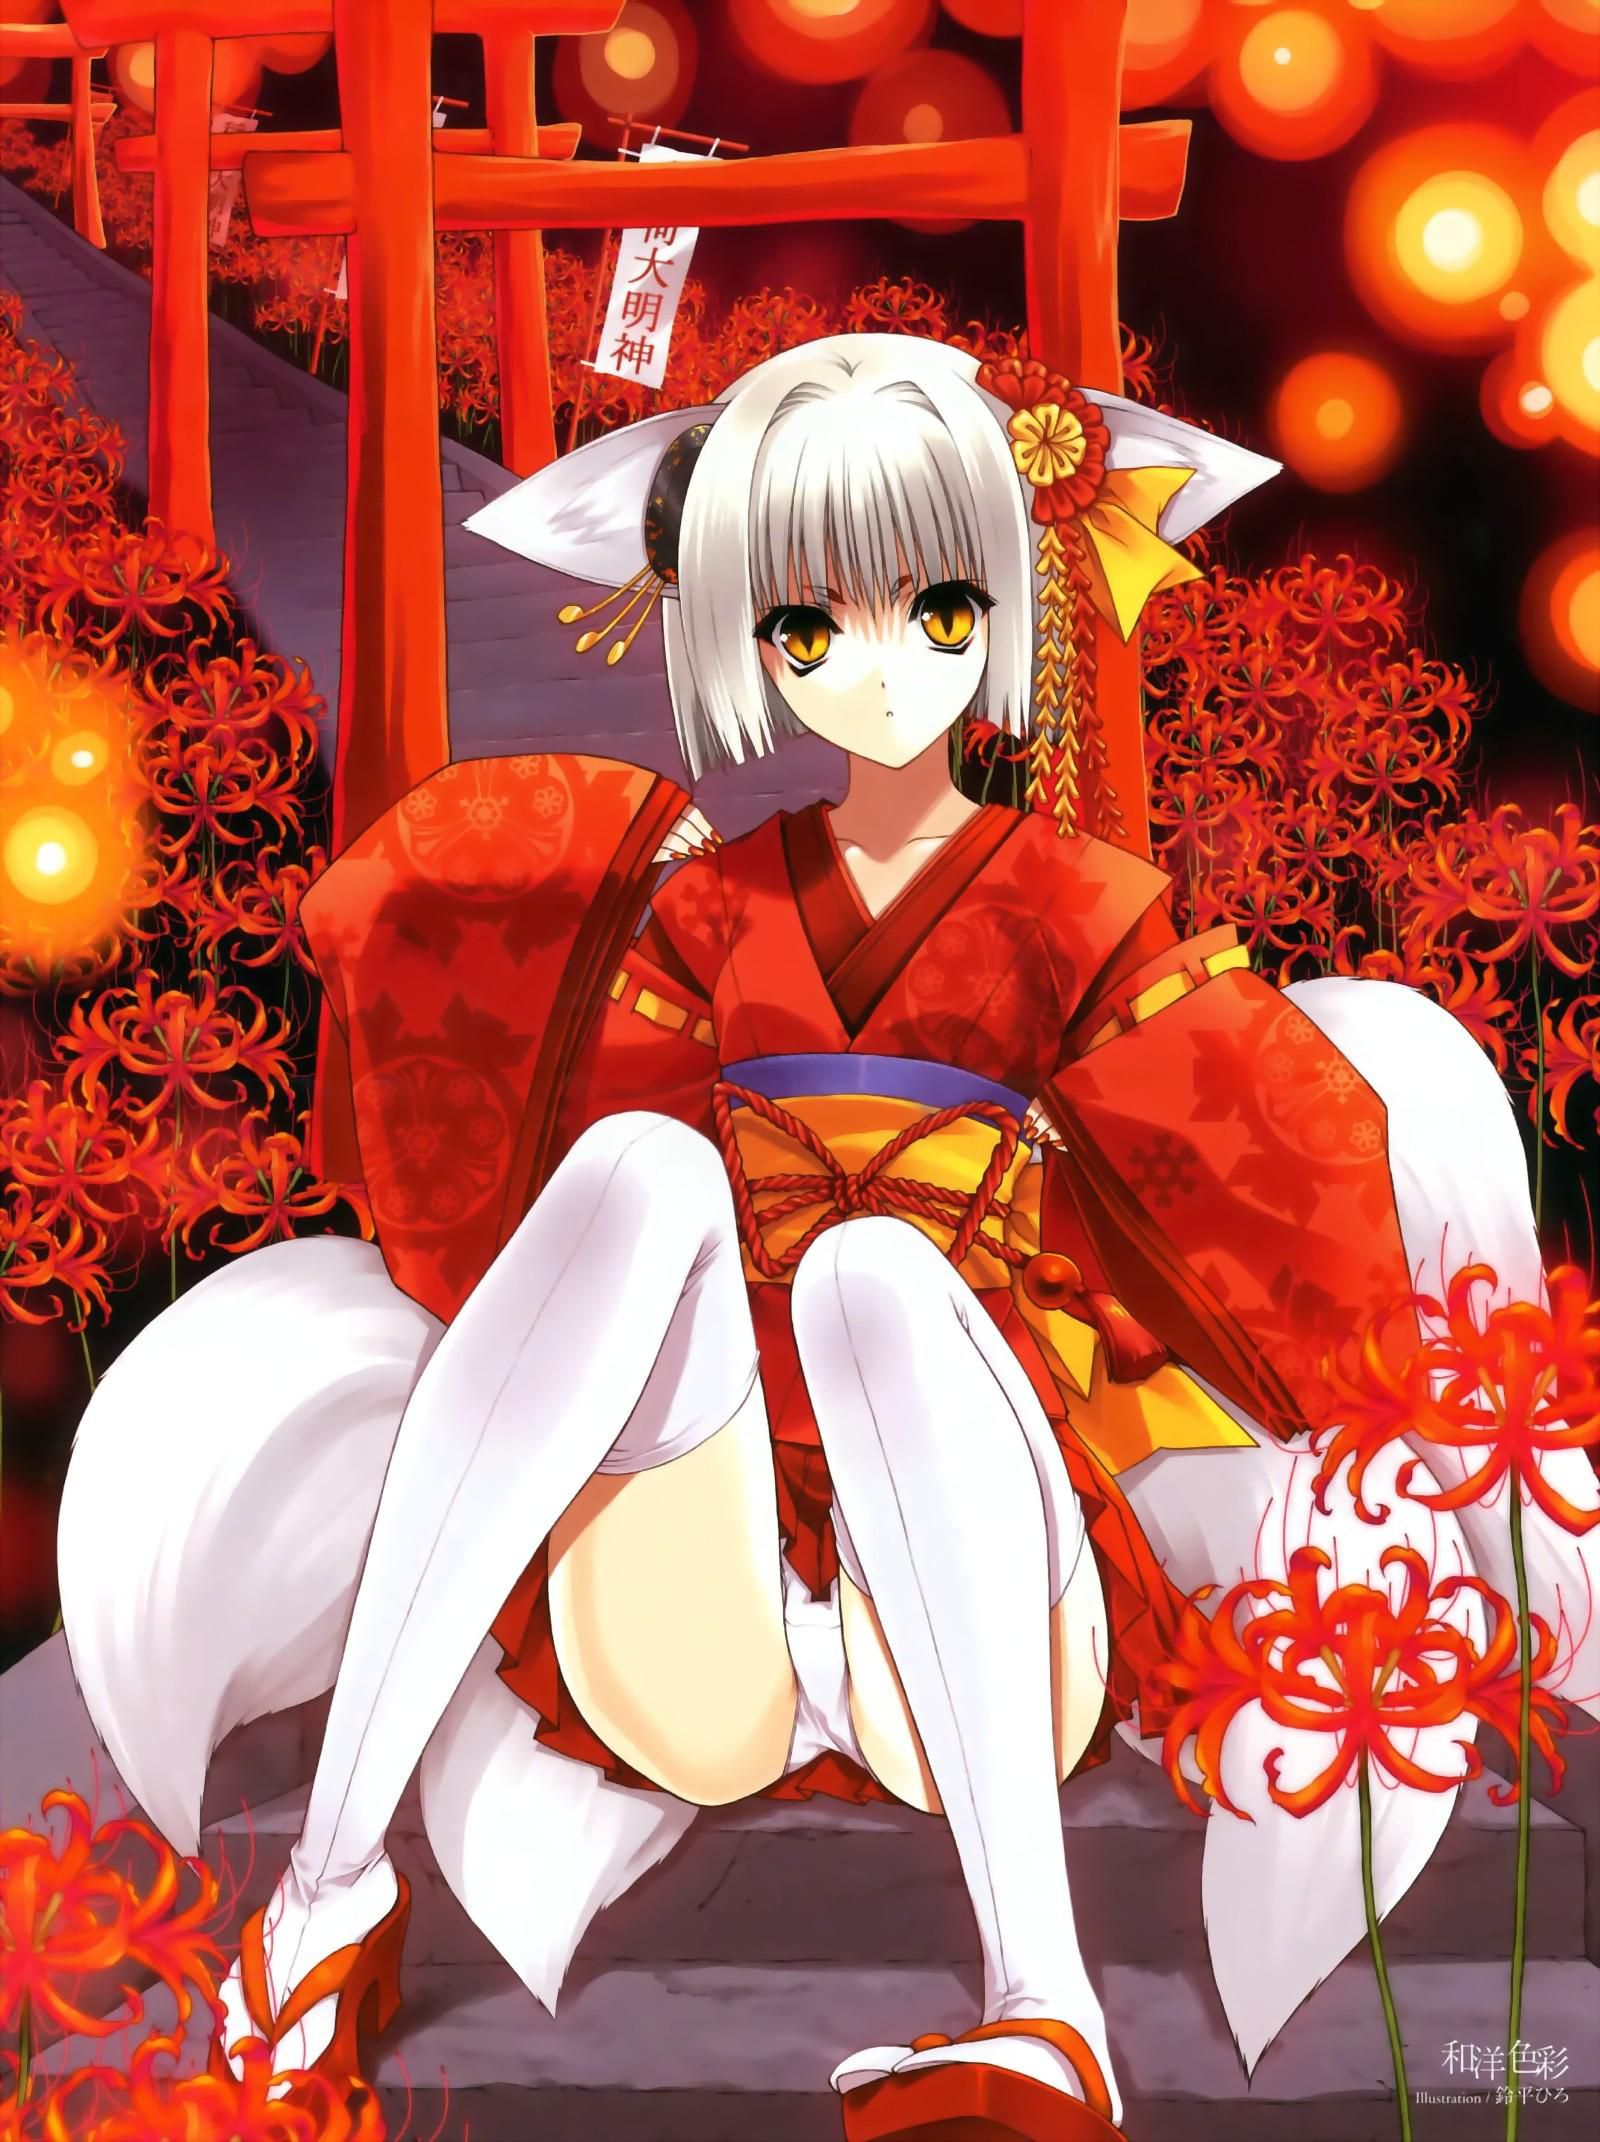 Cute kimono! Erotic image, please w 11 4